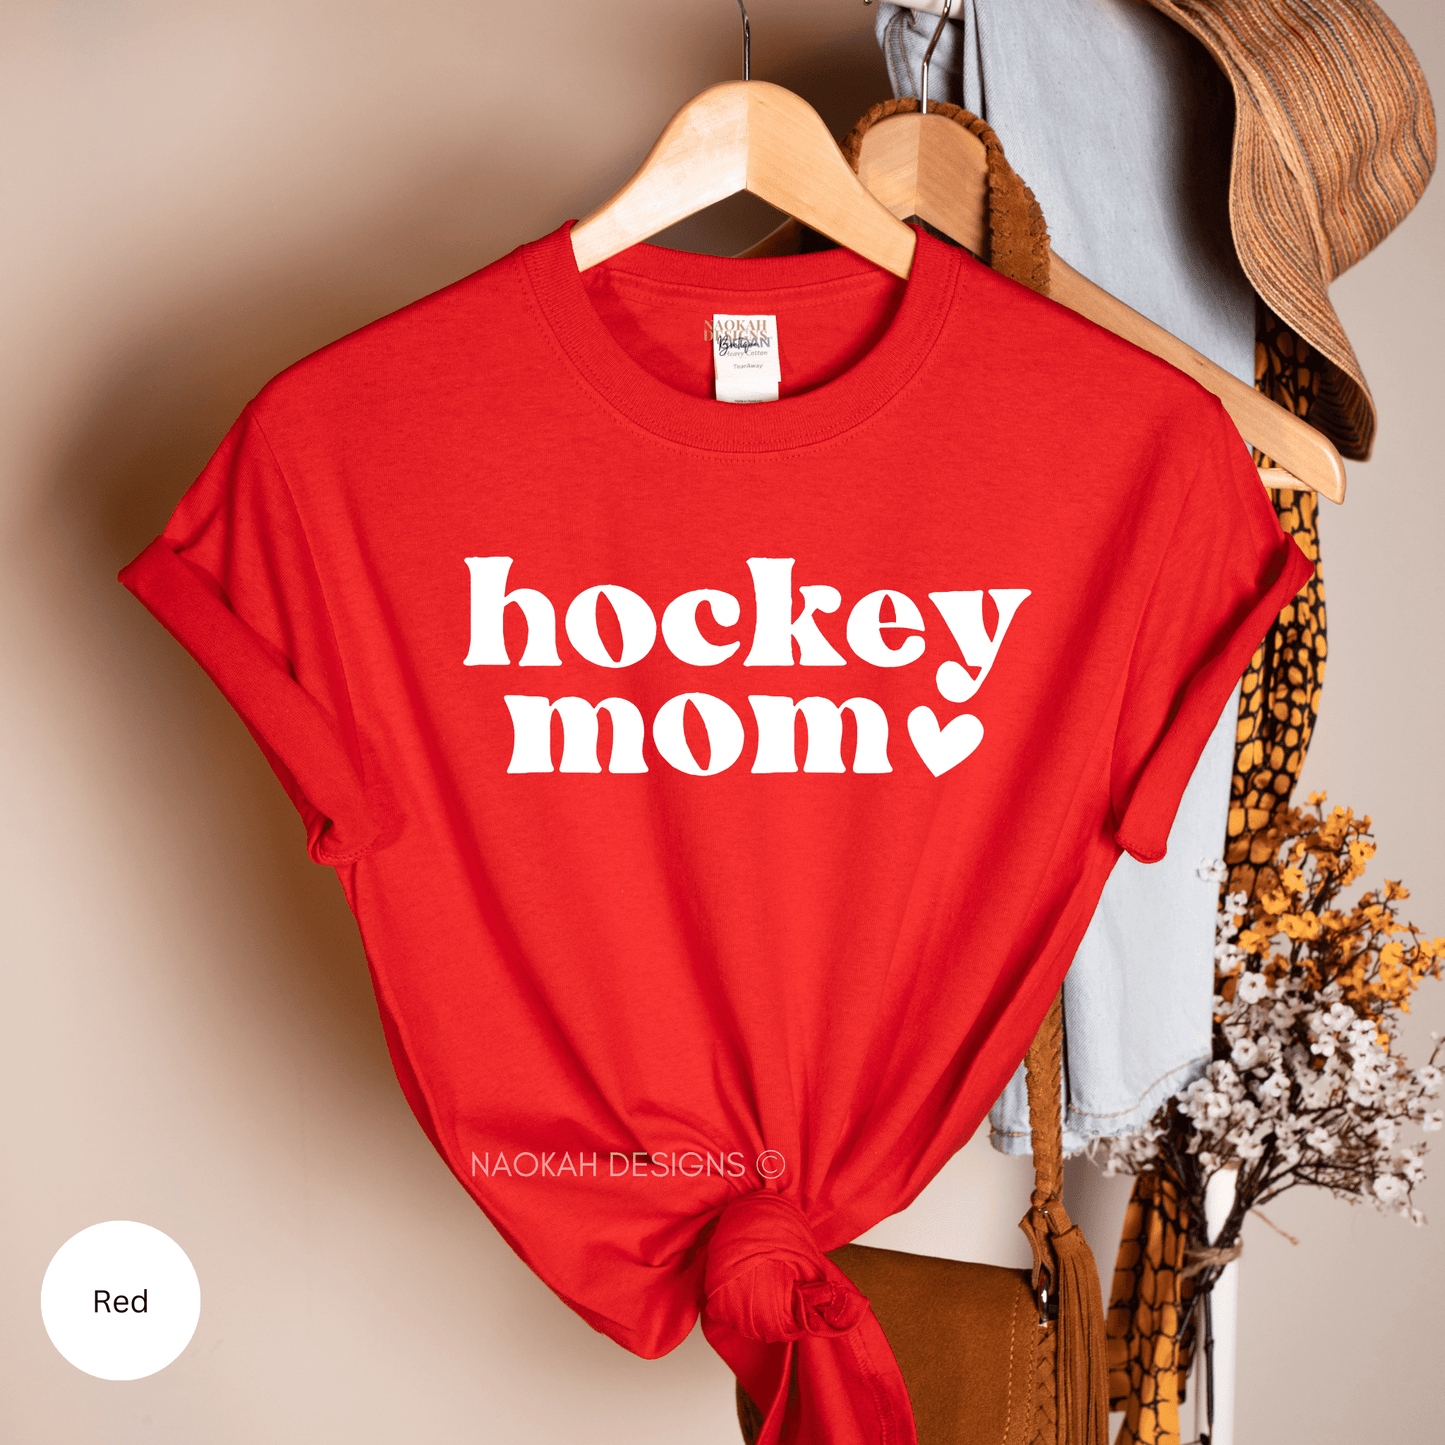 hockey mom tshirt, livin that hockey mom life shirt, hockey life shirt, hockey mom gear, hockey gifts for mom, hockey support shirt, hockey gift, unisex shirt